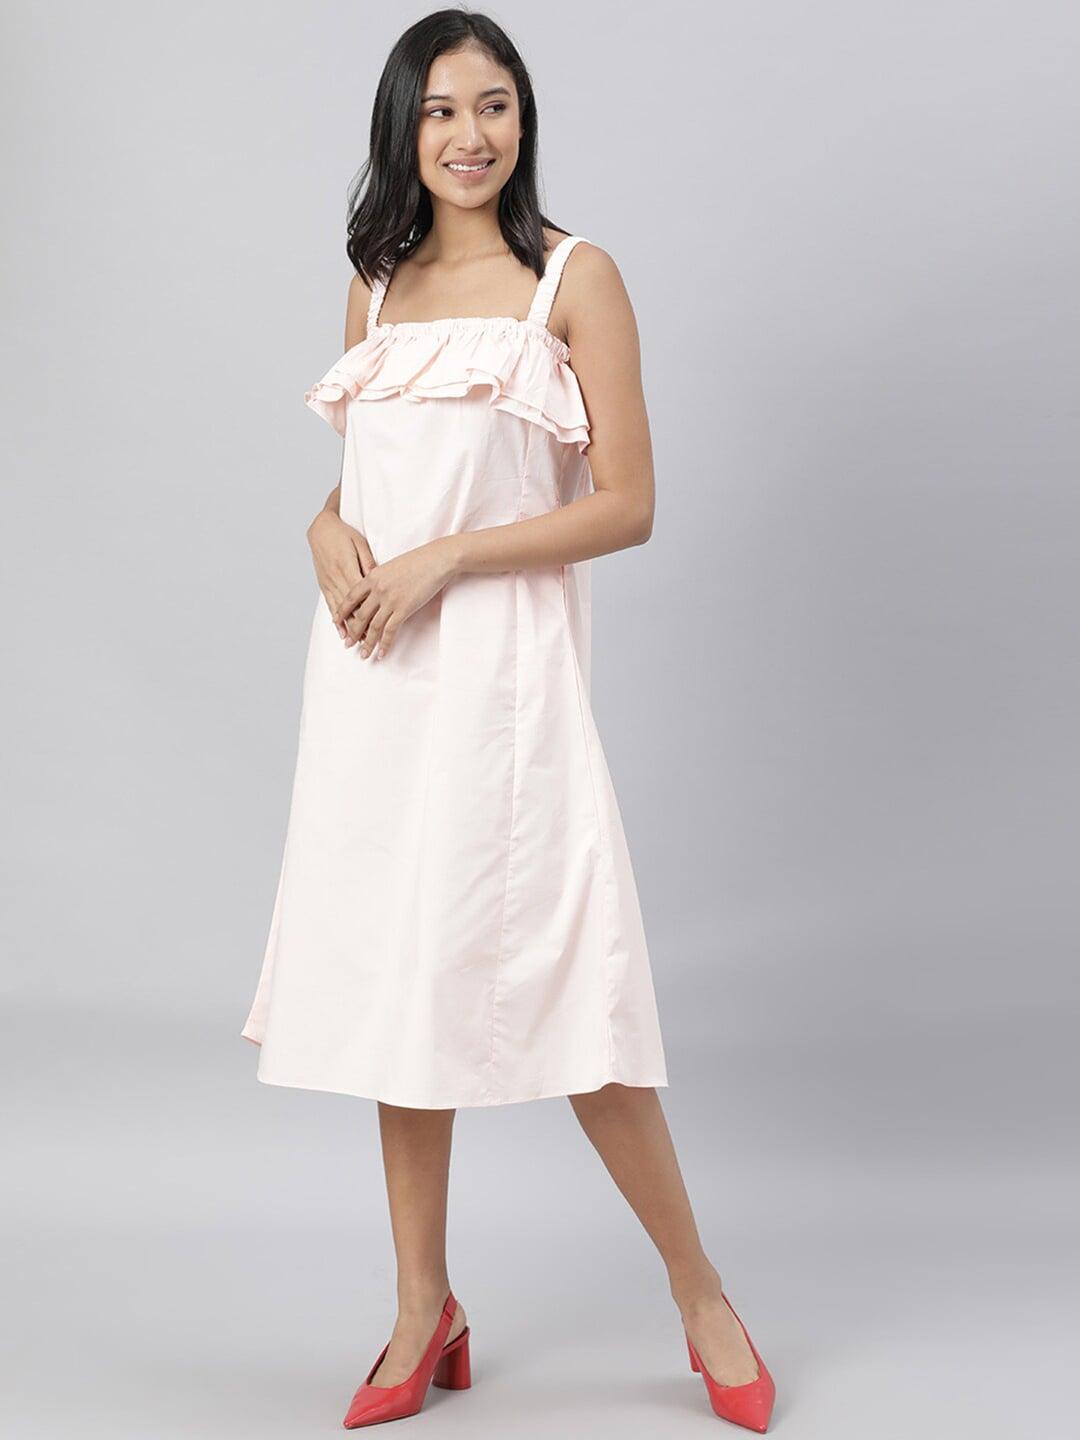 rareism pink solid a-line sleeveless dress